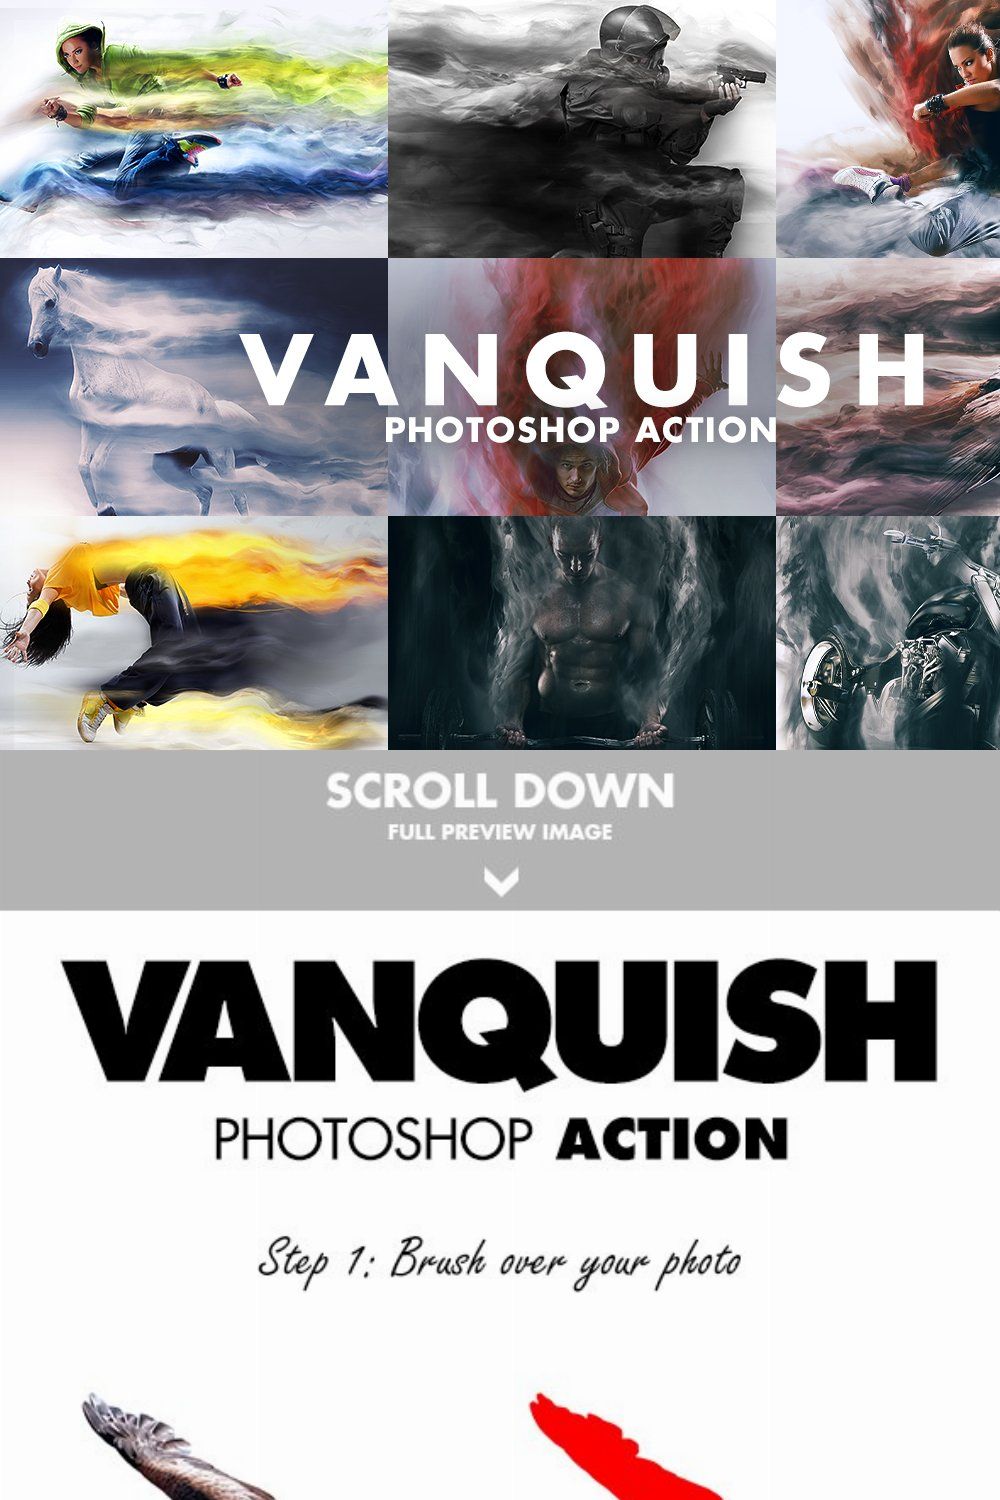 Vanquish Photoshop Action pinterest preview image.